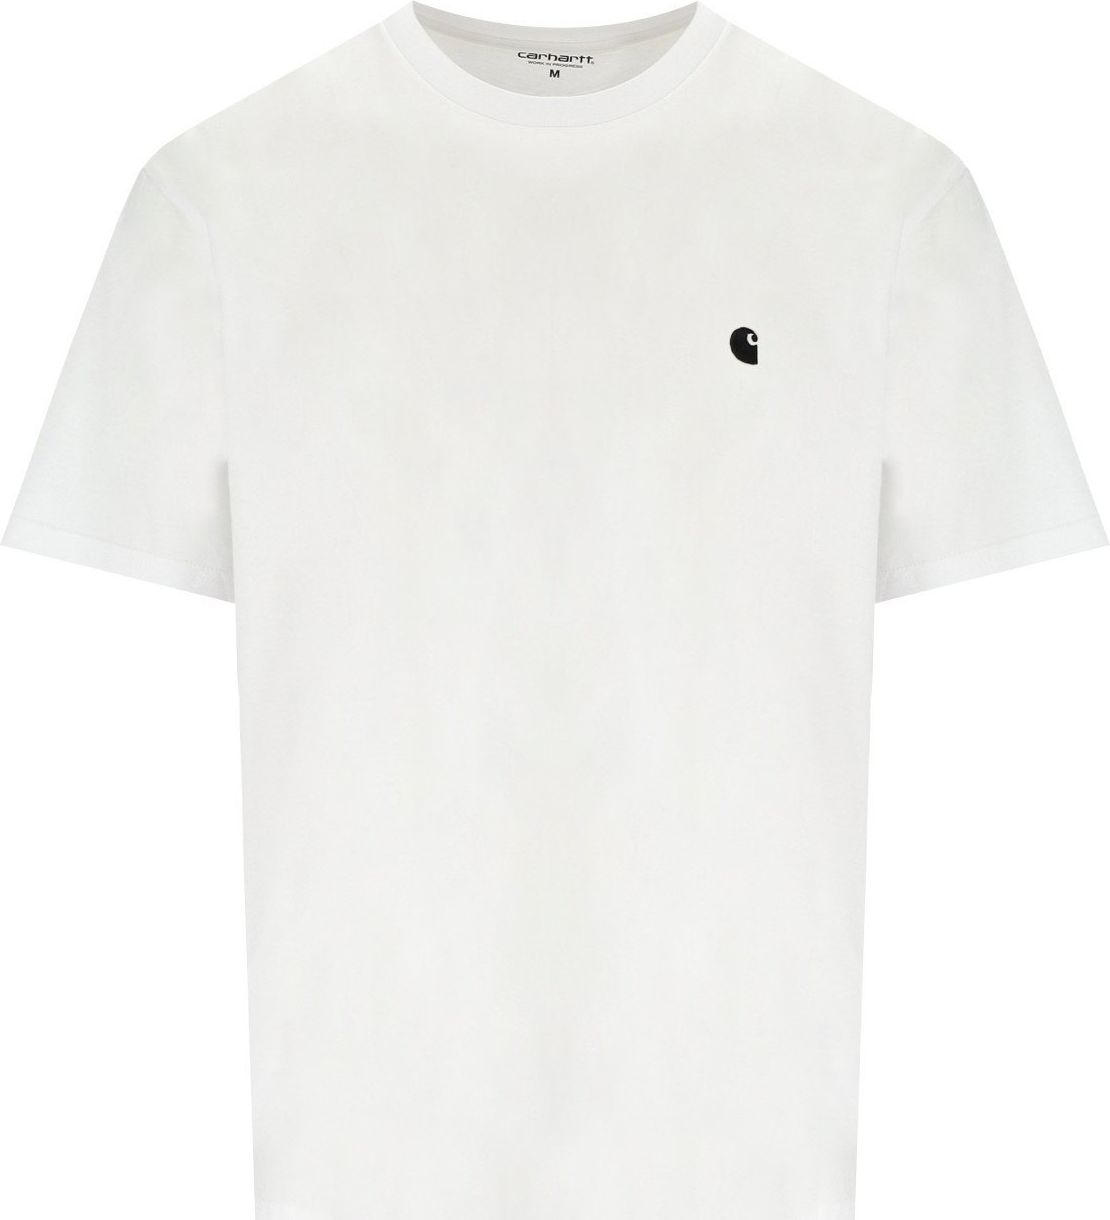 Carhartt Wip S/s Madison White T-shirt White Wit